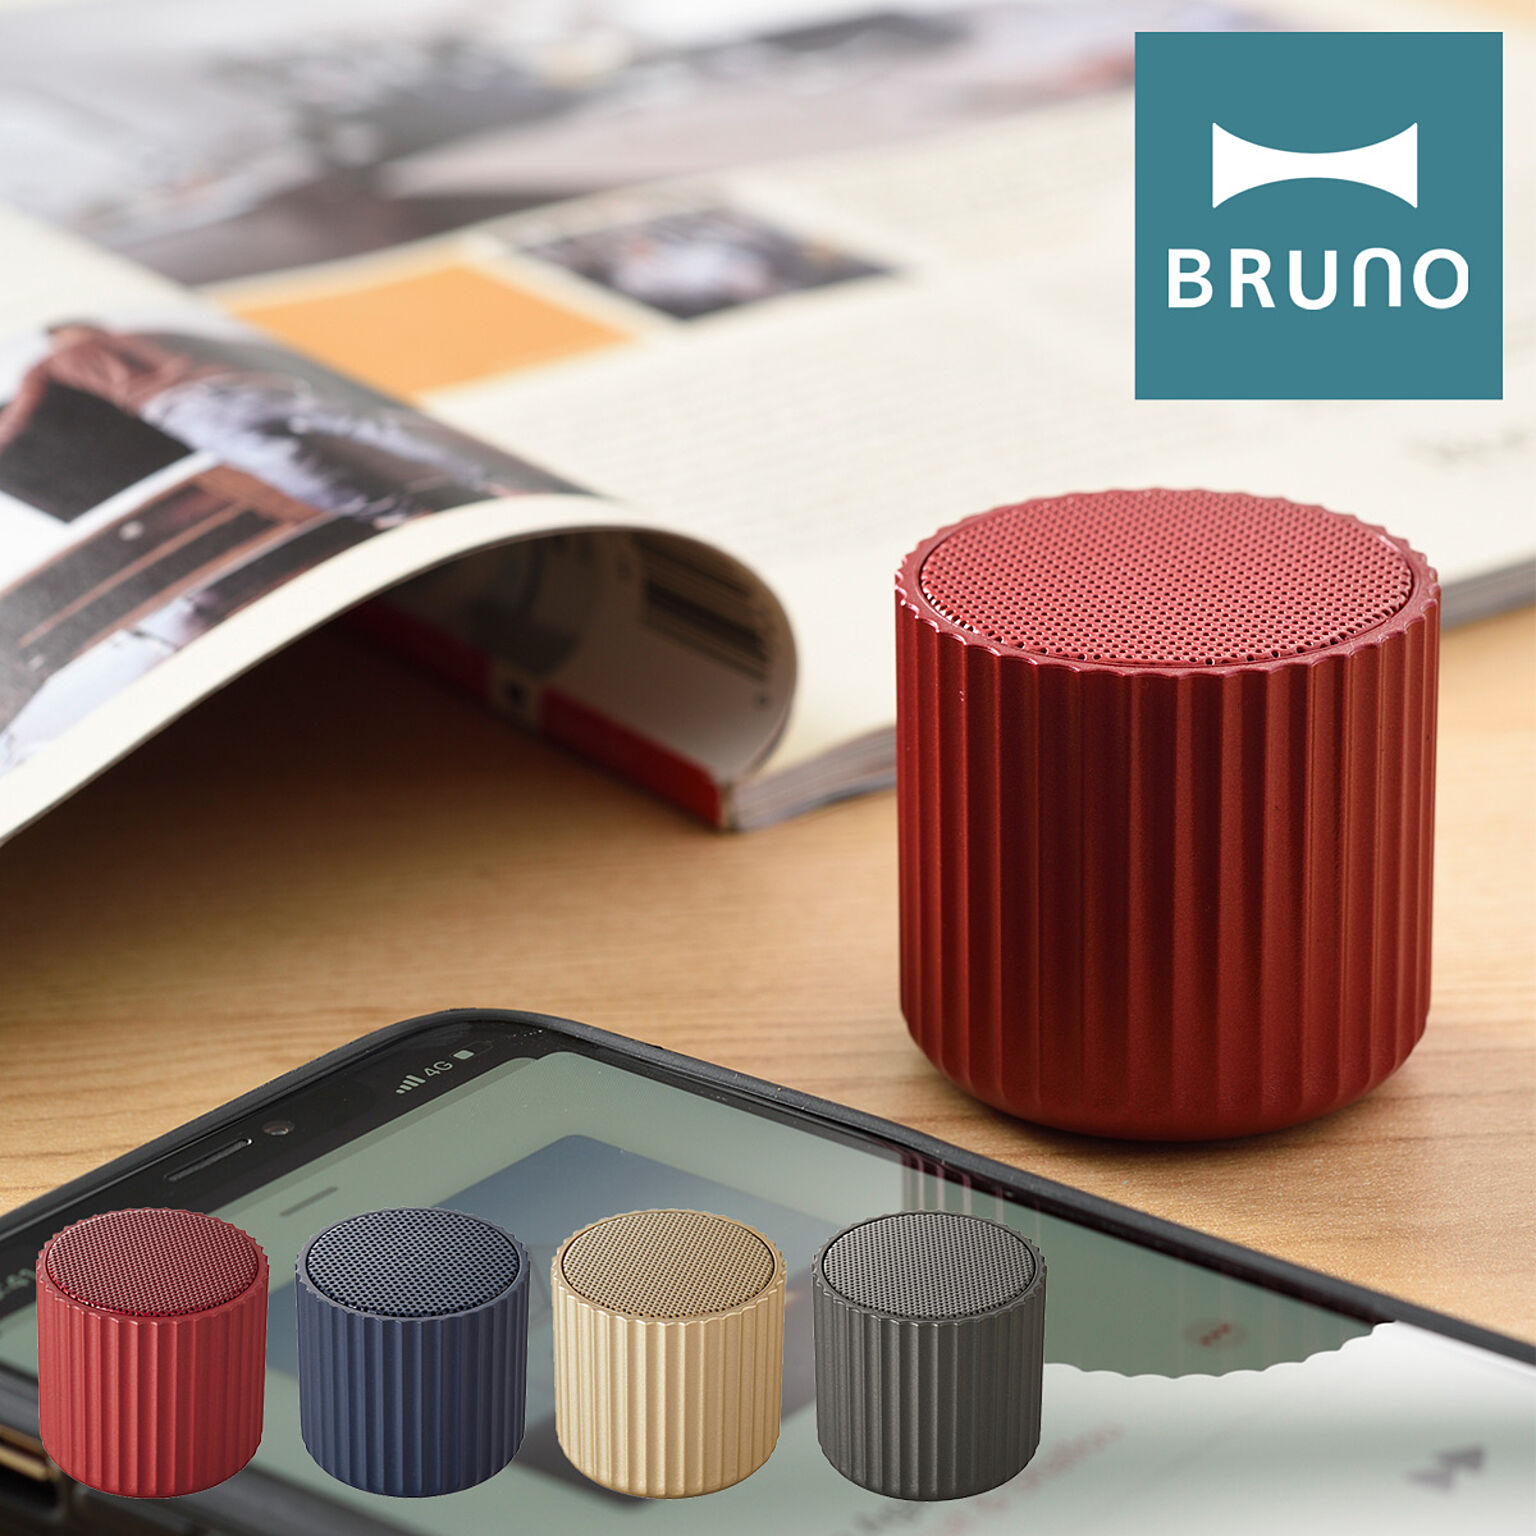 BRUNO / Bluetoothスピーカー ワイヤレススピーカー リブポット